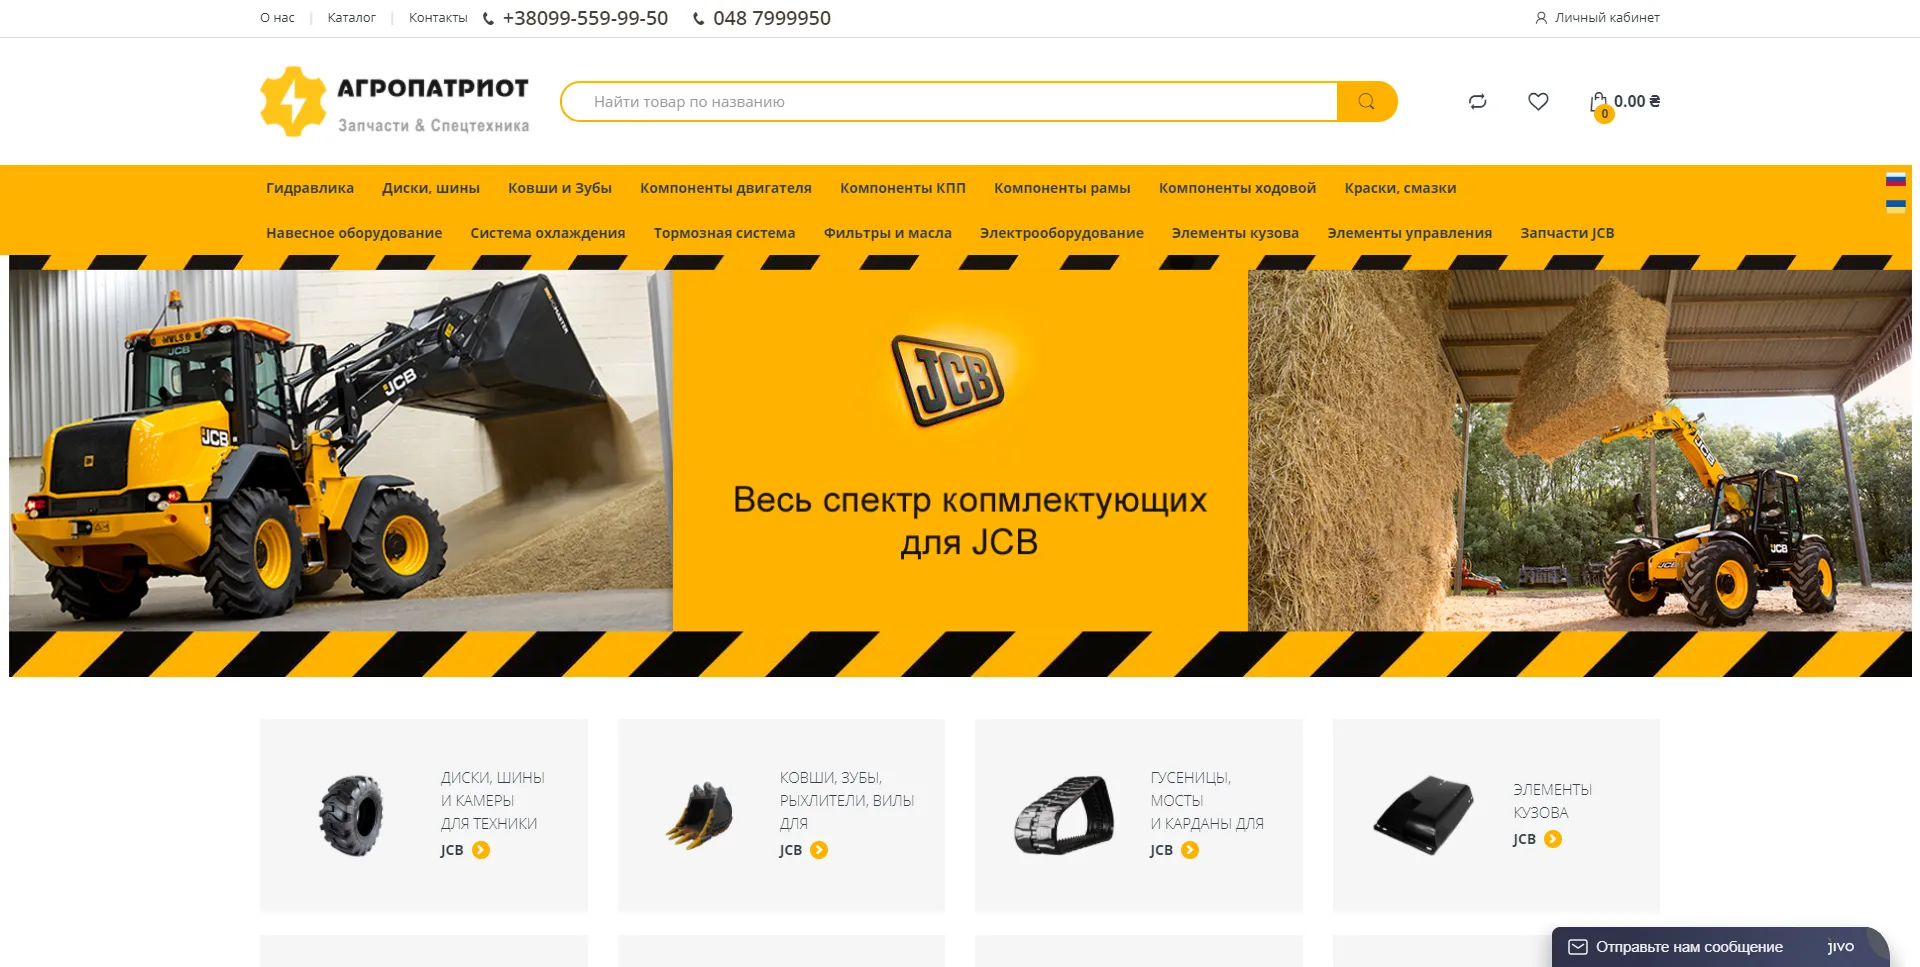 Создание интернет-магазина запчастей JCB в Украине